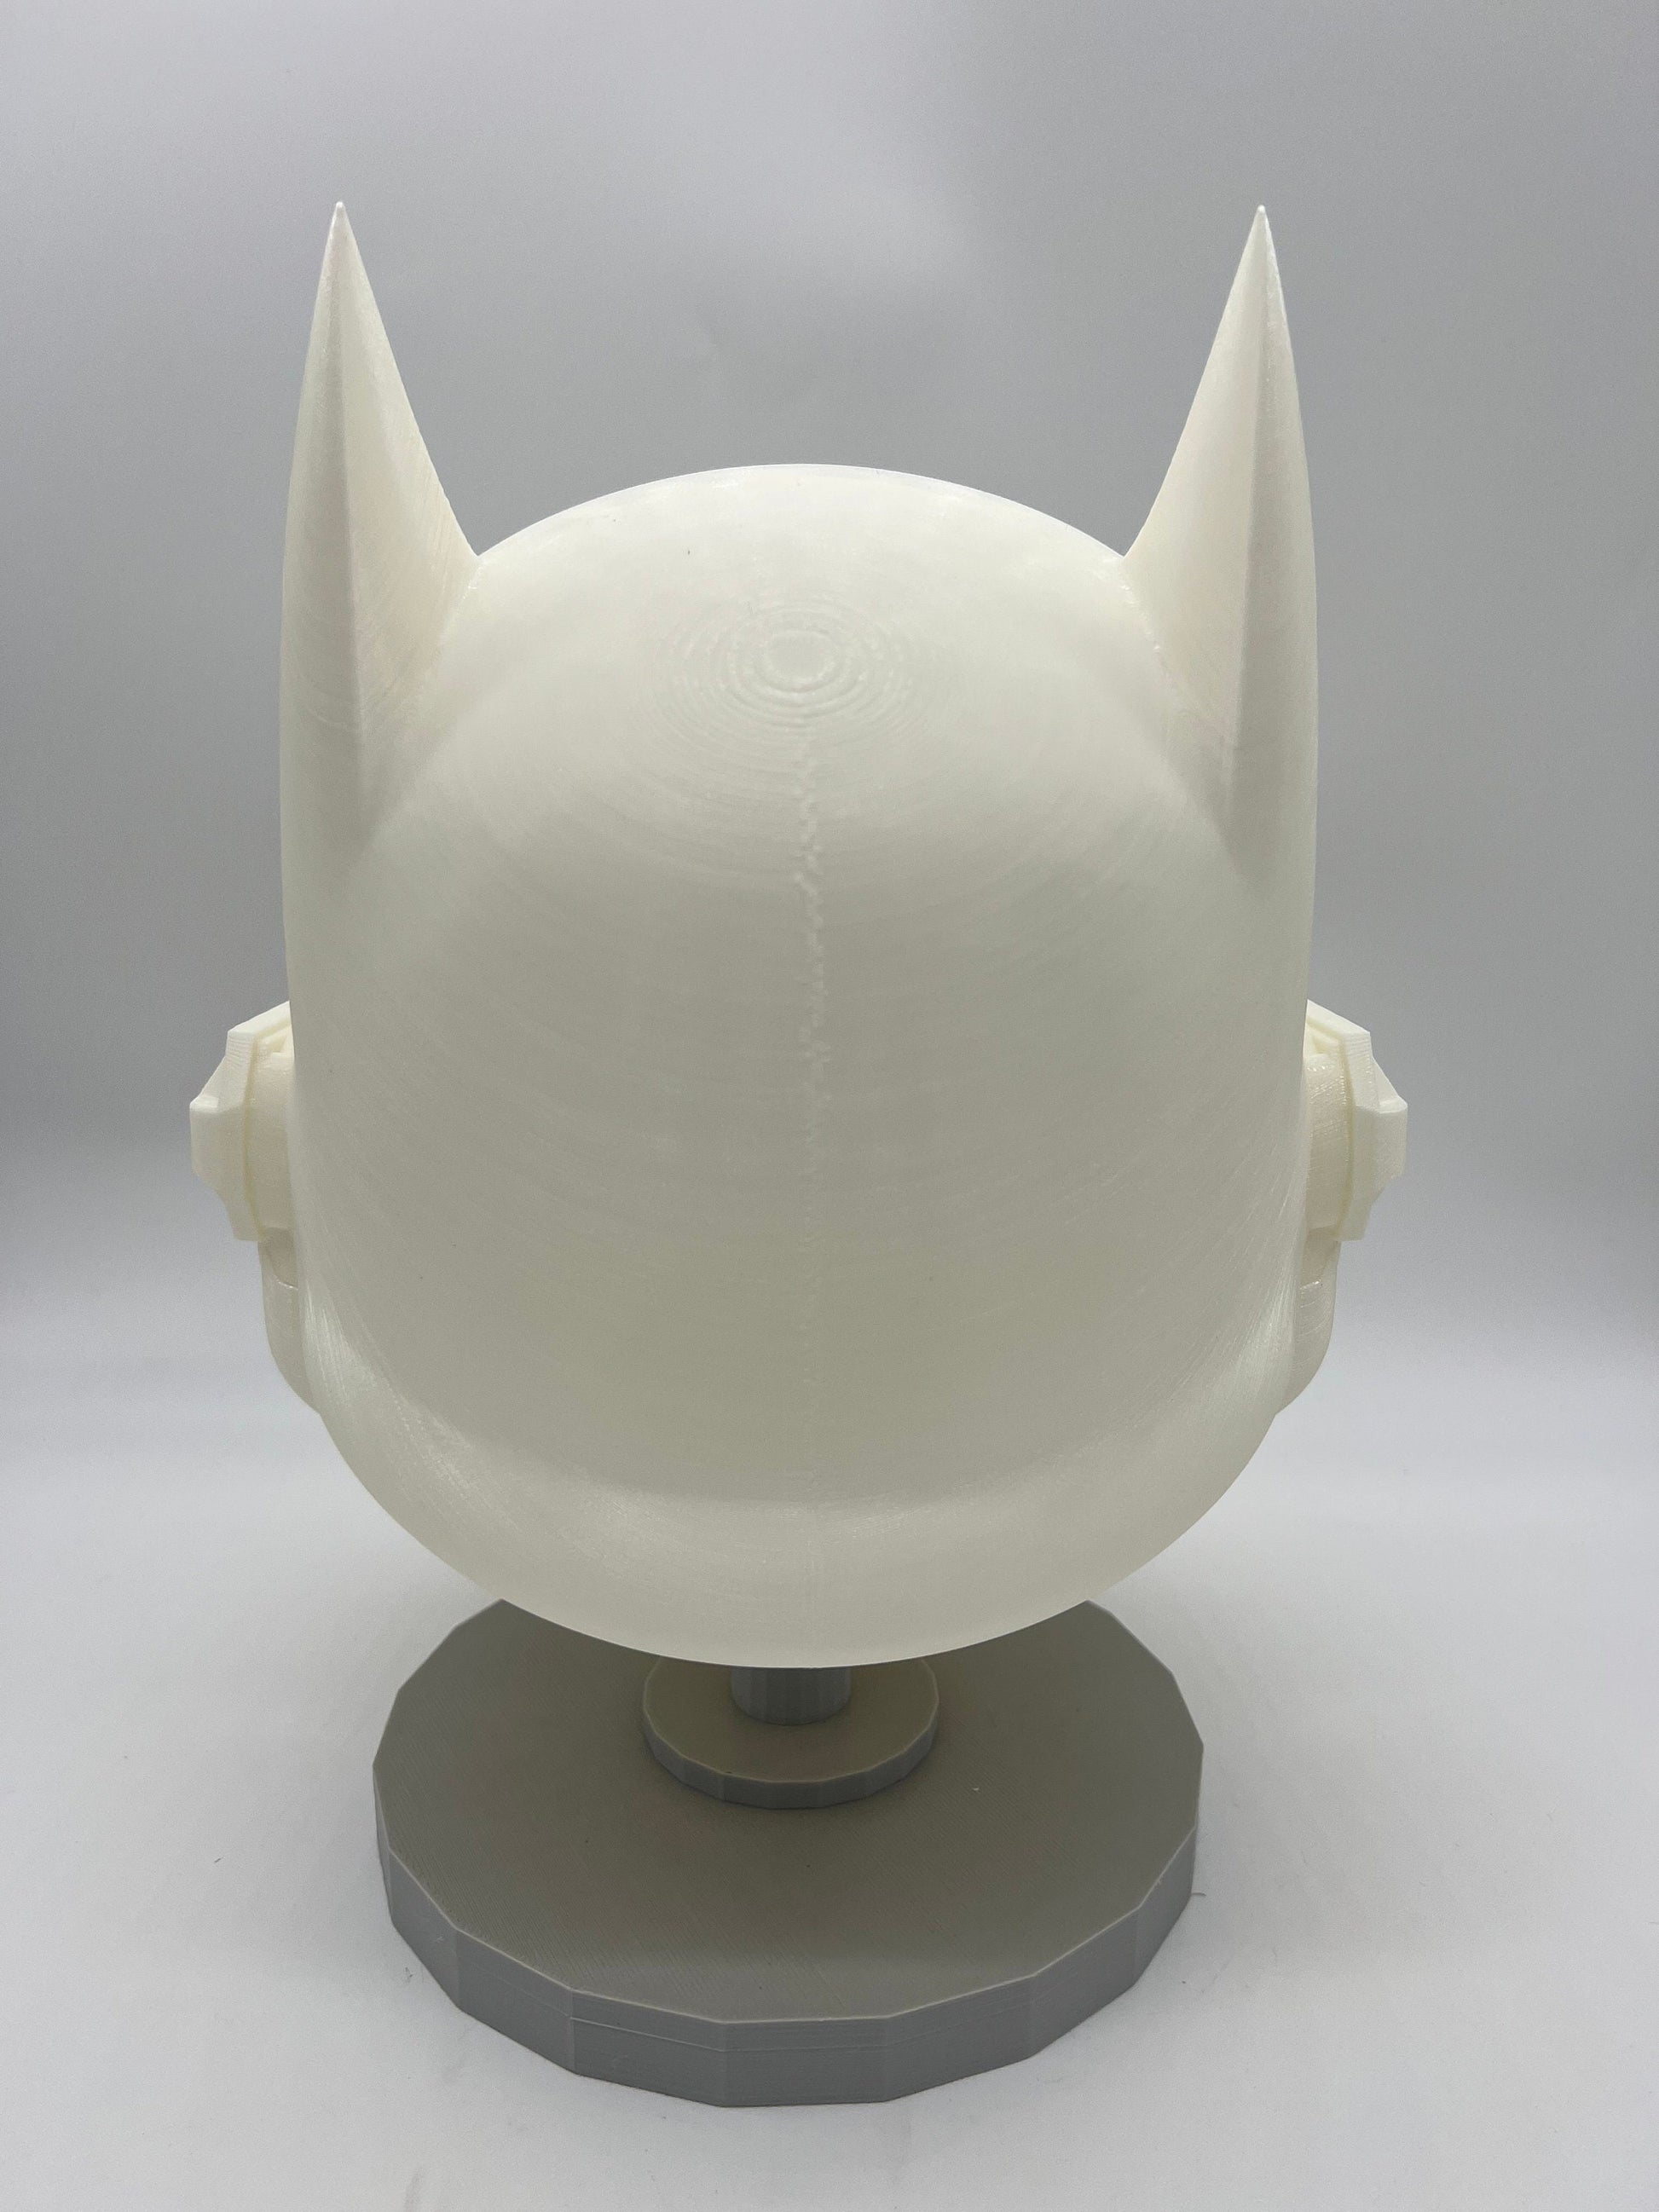 Bat-Trooper Concept Cosplay Helmet